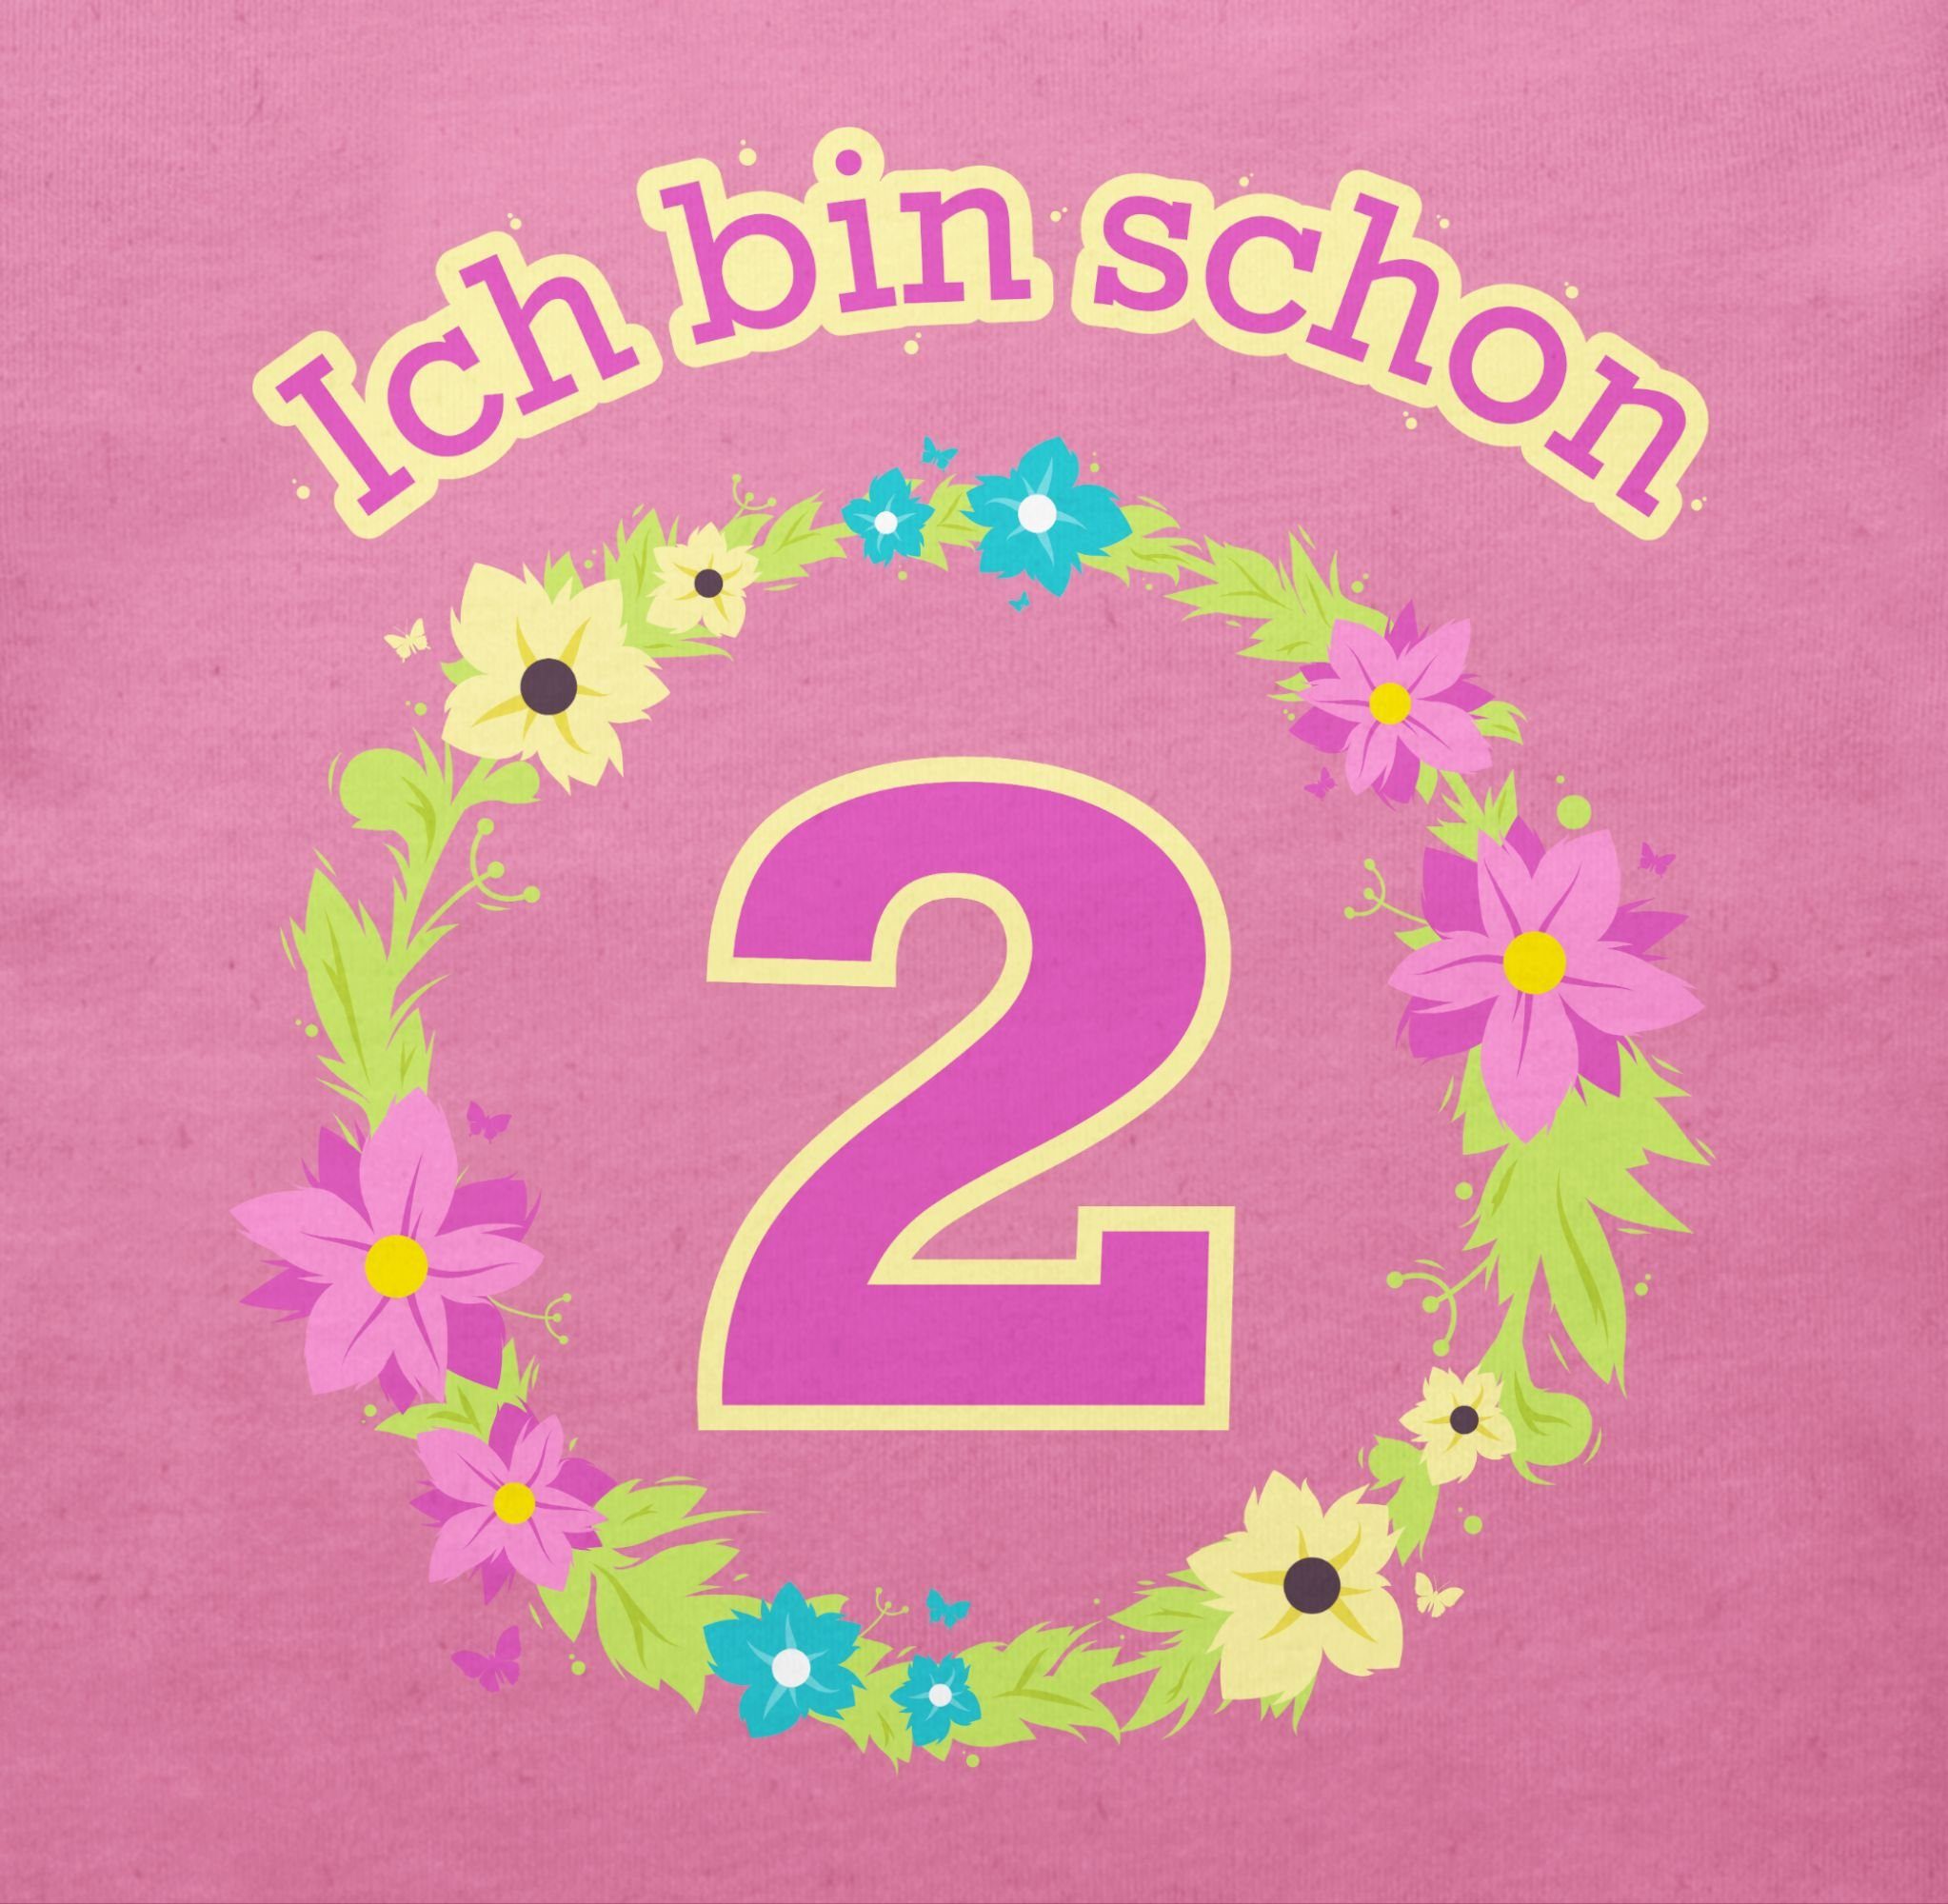 3 2. schon Shirtracer zwei Ich Blumenkranz Geburtstag T-Shirt bin Pink